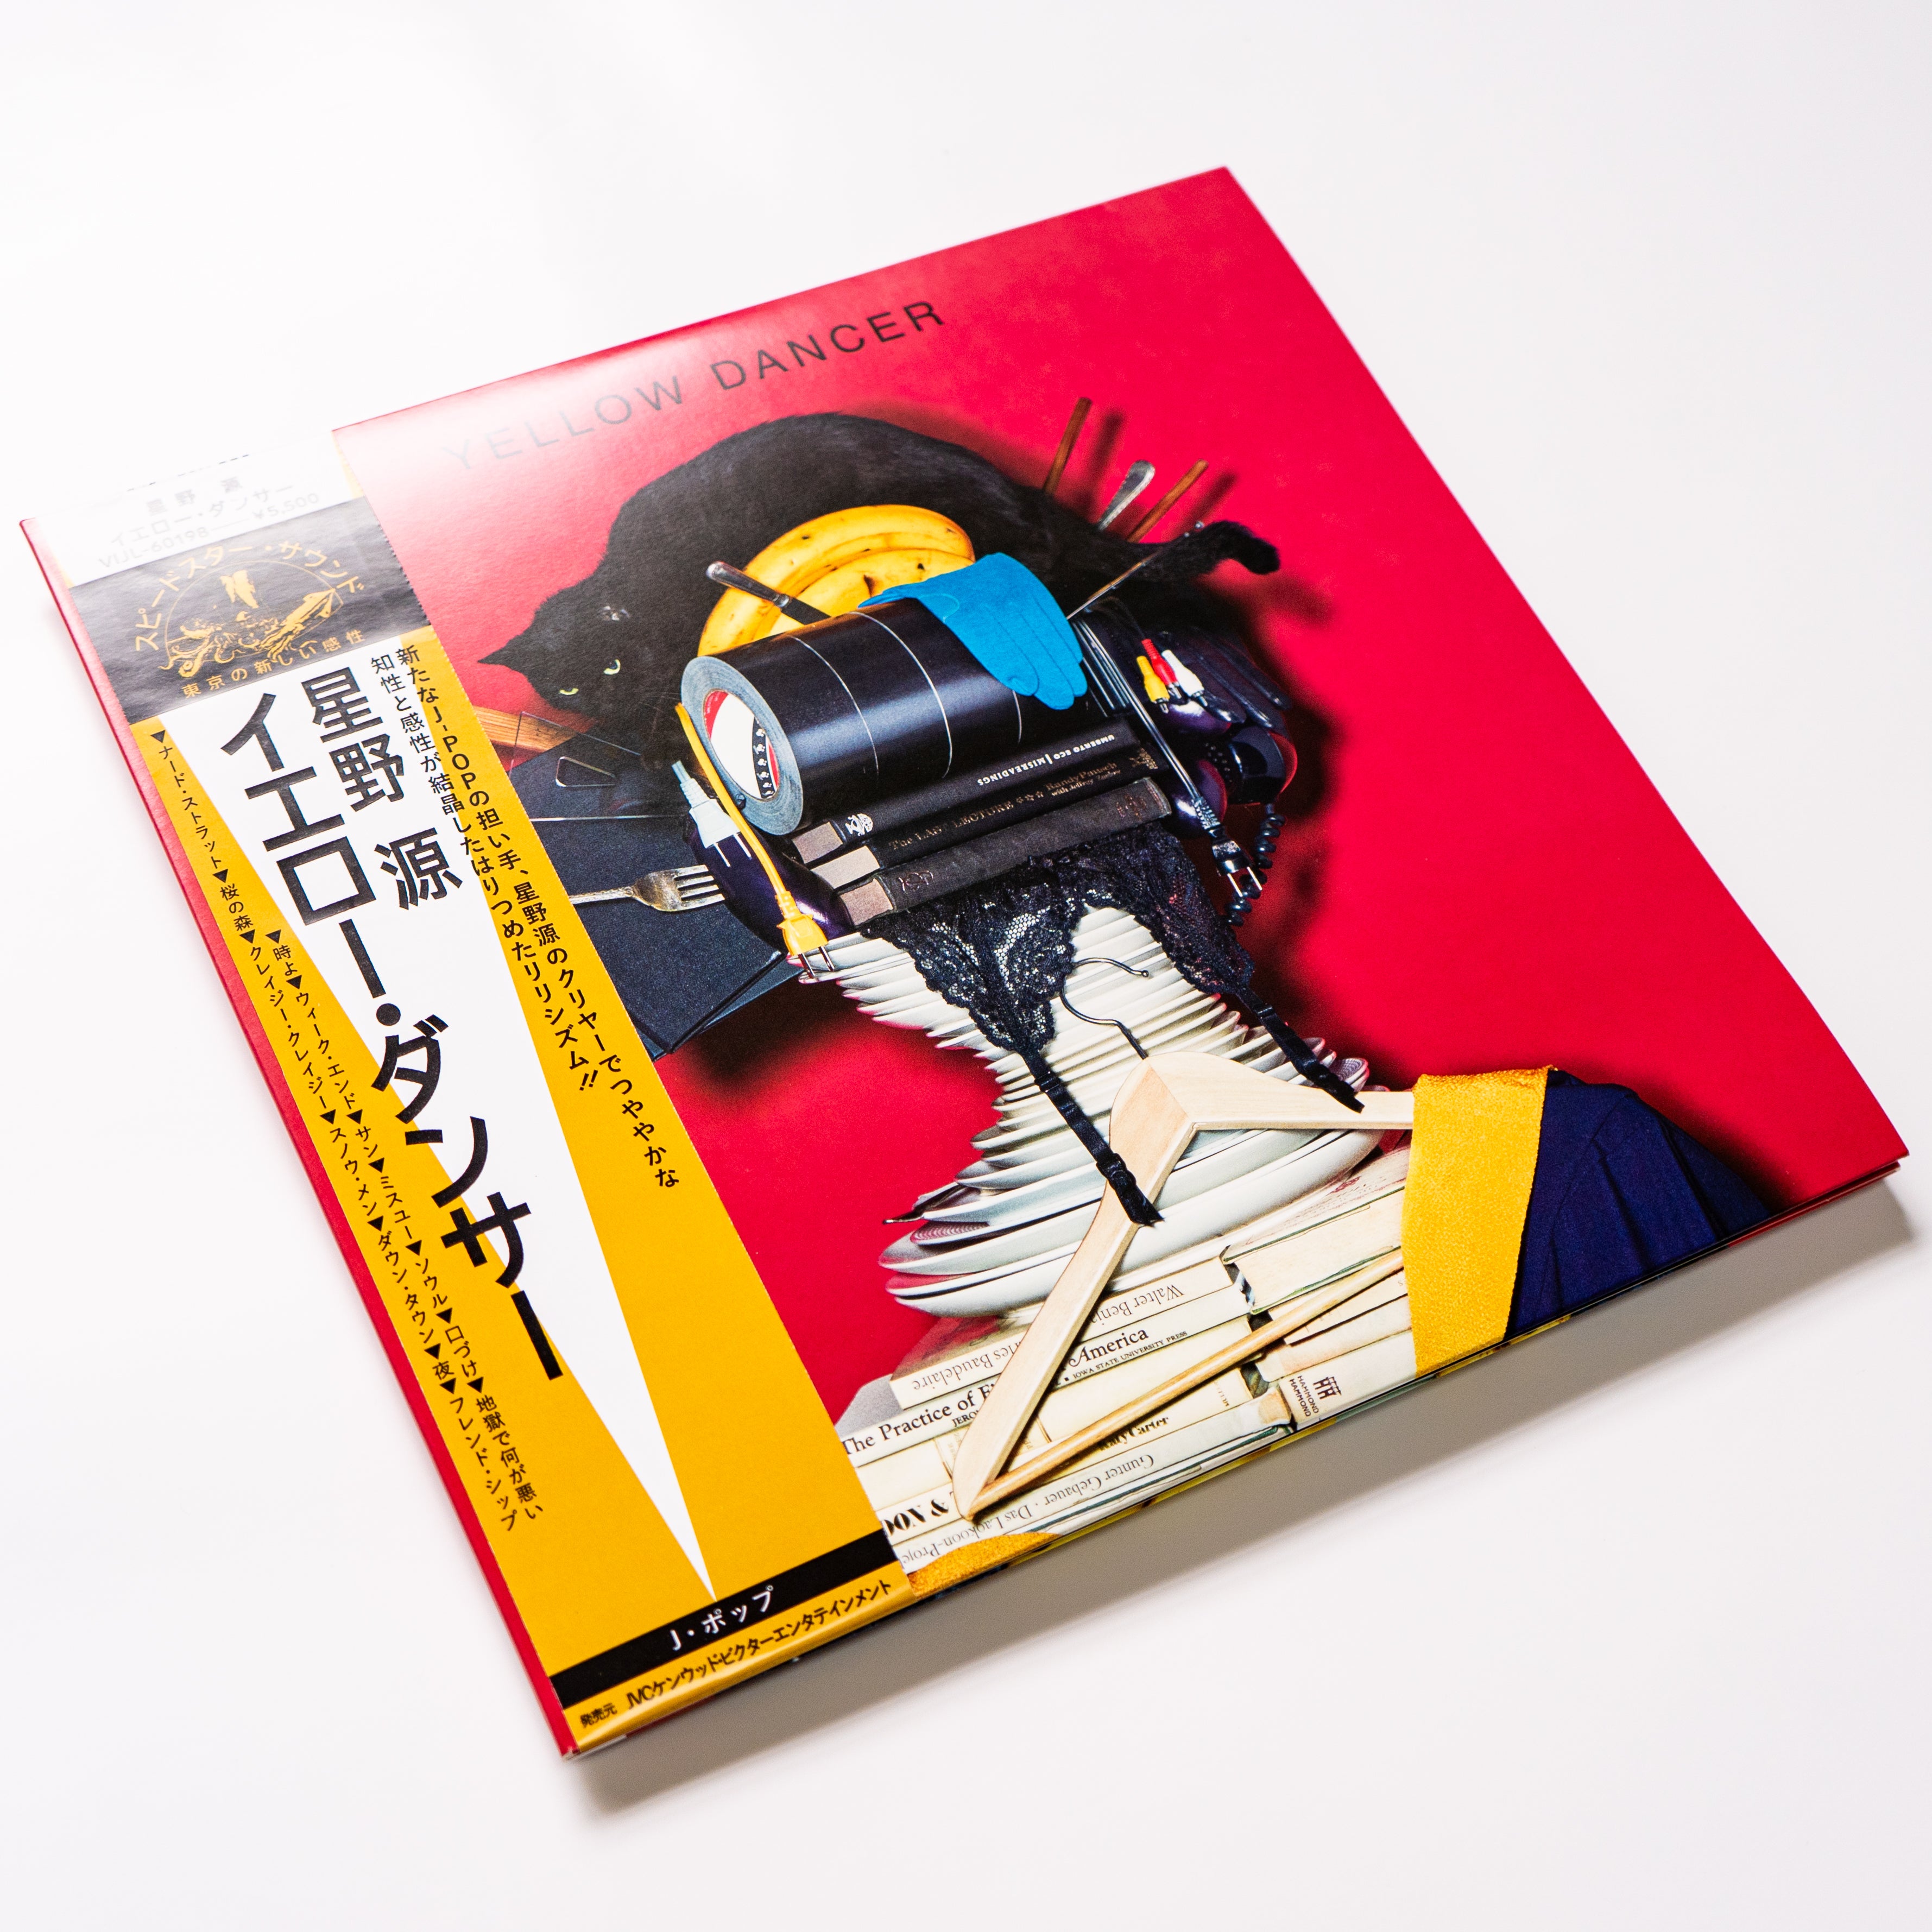 星野源 / Yellow Dancer – Jeff Records